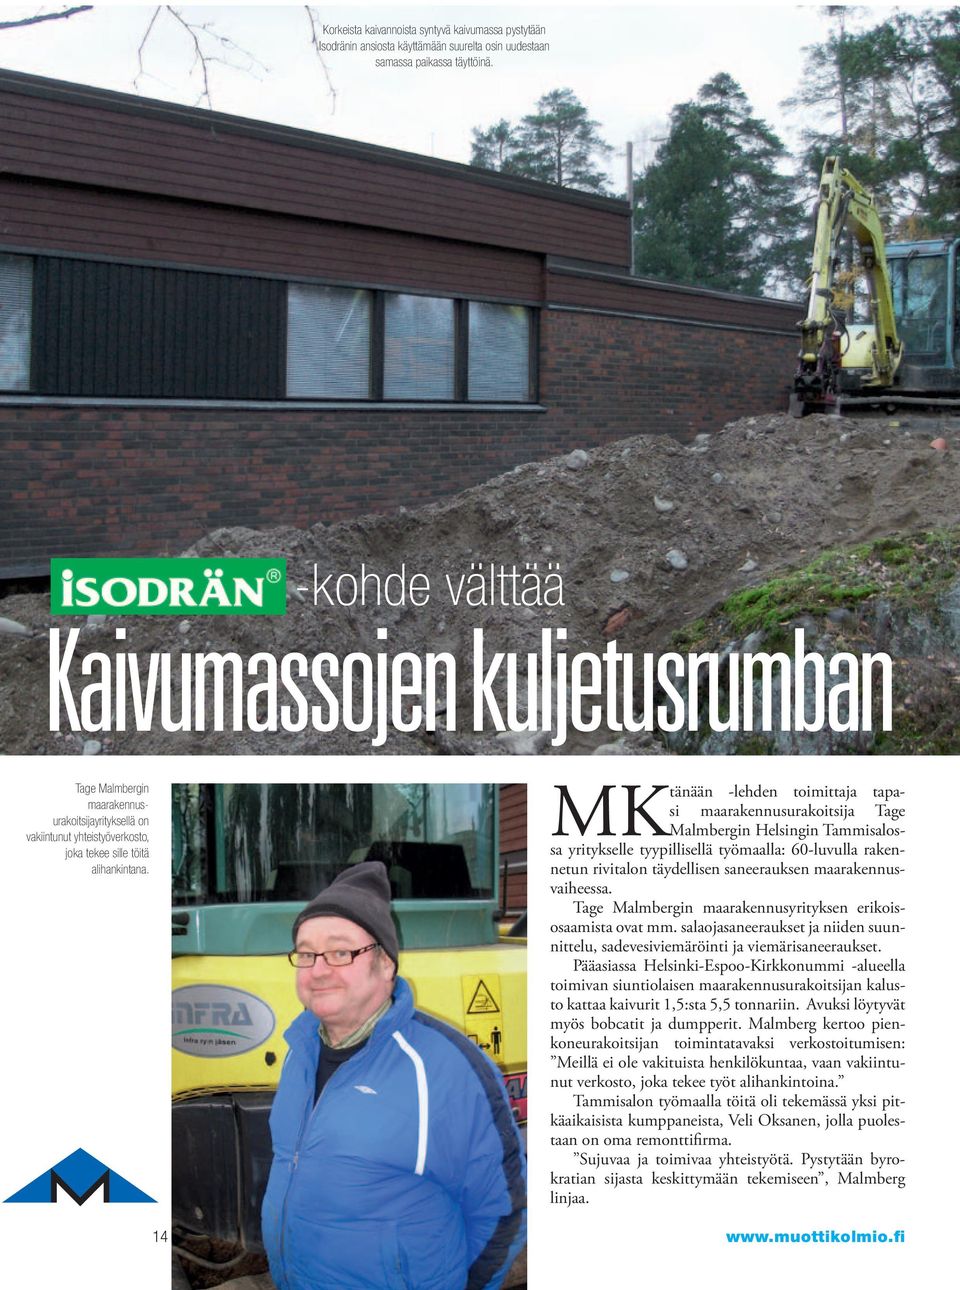 tänään -lehden toimittaja tapasi maarakennusurakoitsija Tage MK Malmbergin Helsingin Tammisalossa yritykselle tyypillisellä työmaalla: 60-luvulla rakennetun rivitalon täydellisen saneerauksen